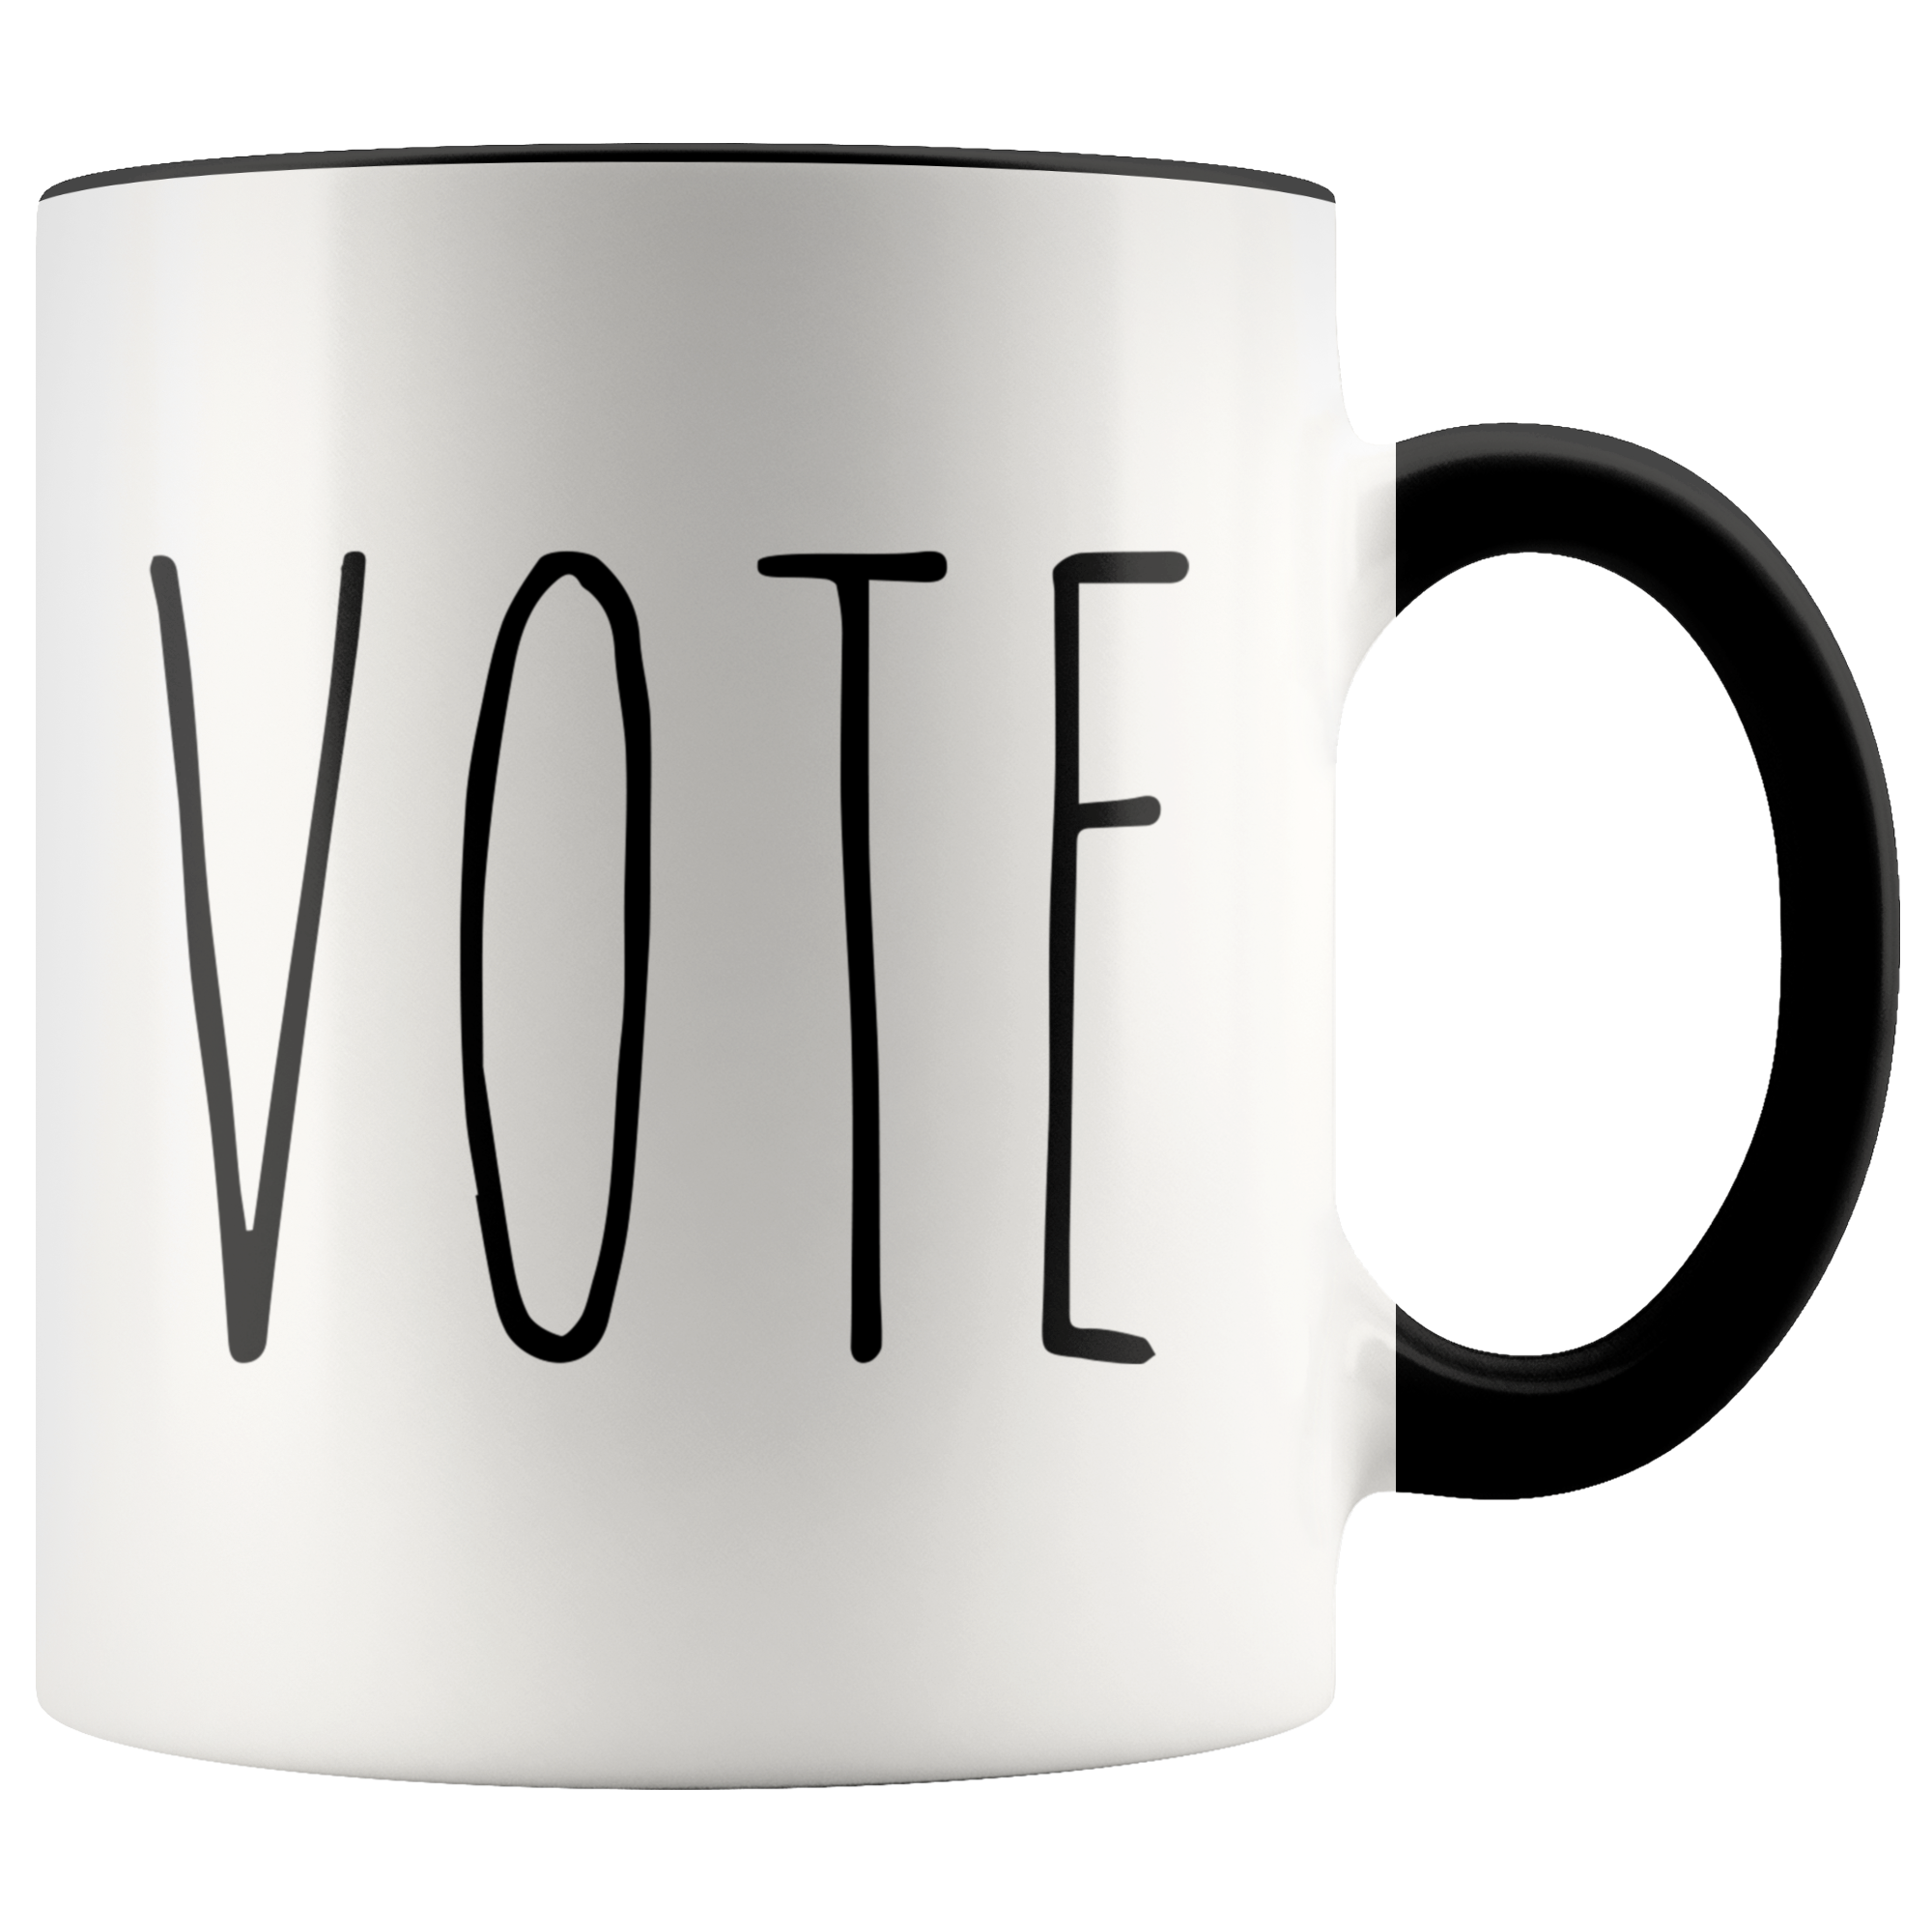 VOTE Mug Election 2020 Coffee Cup Democrat Republican Voting